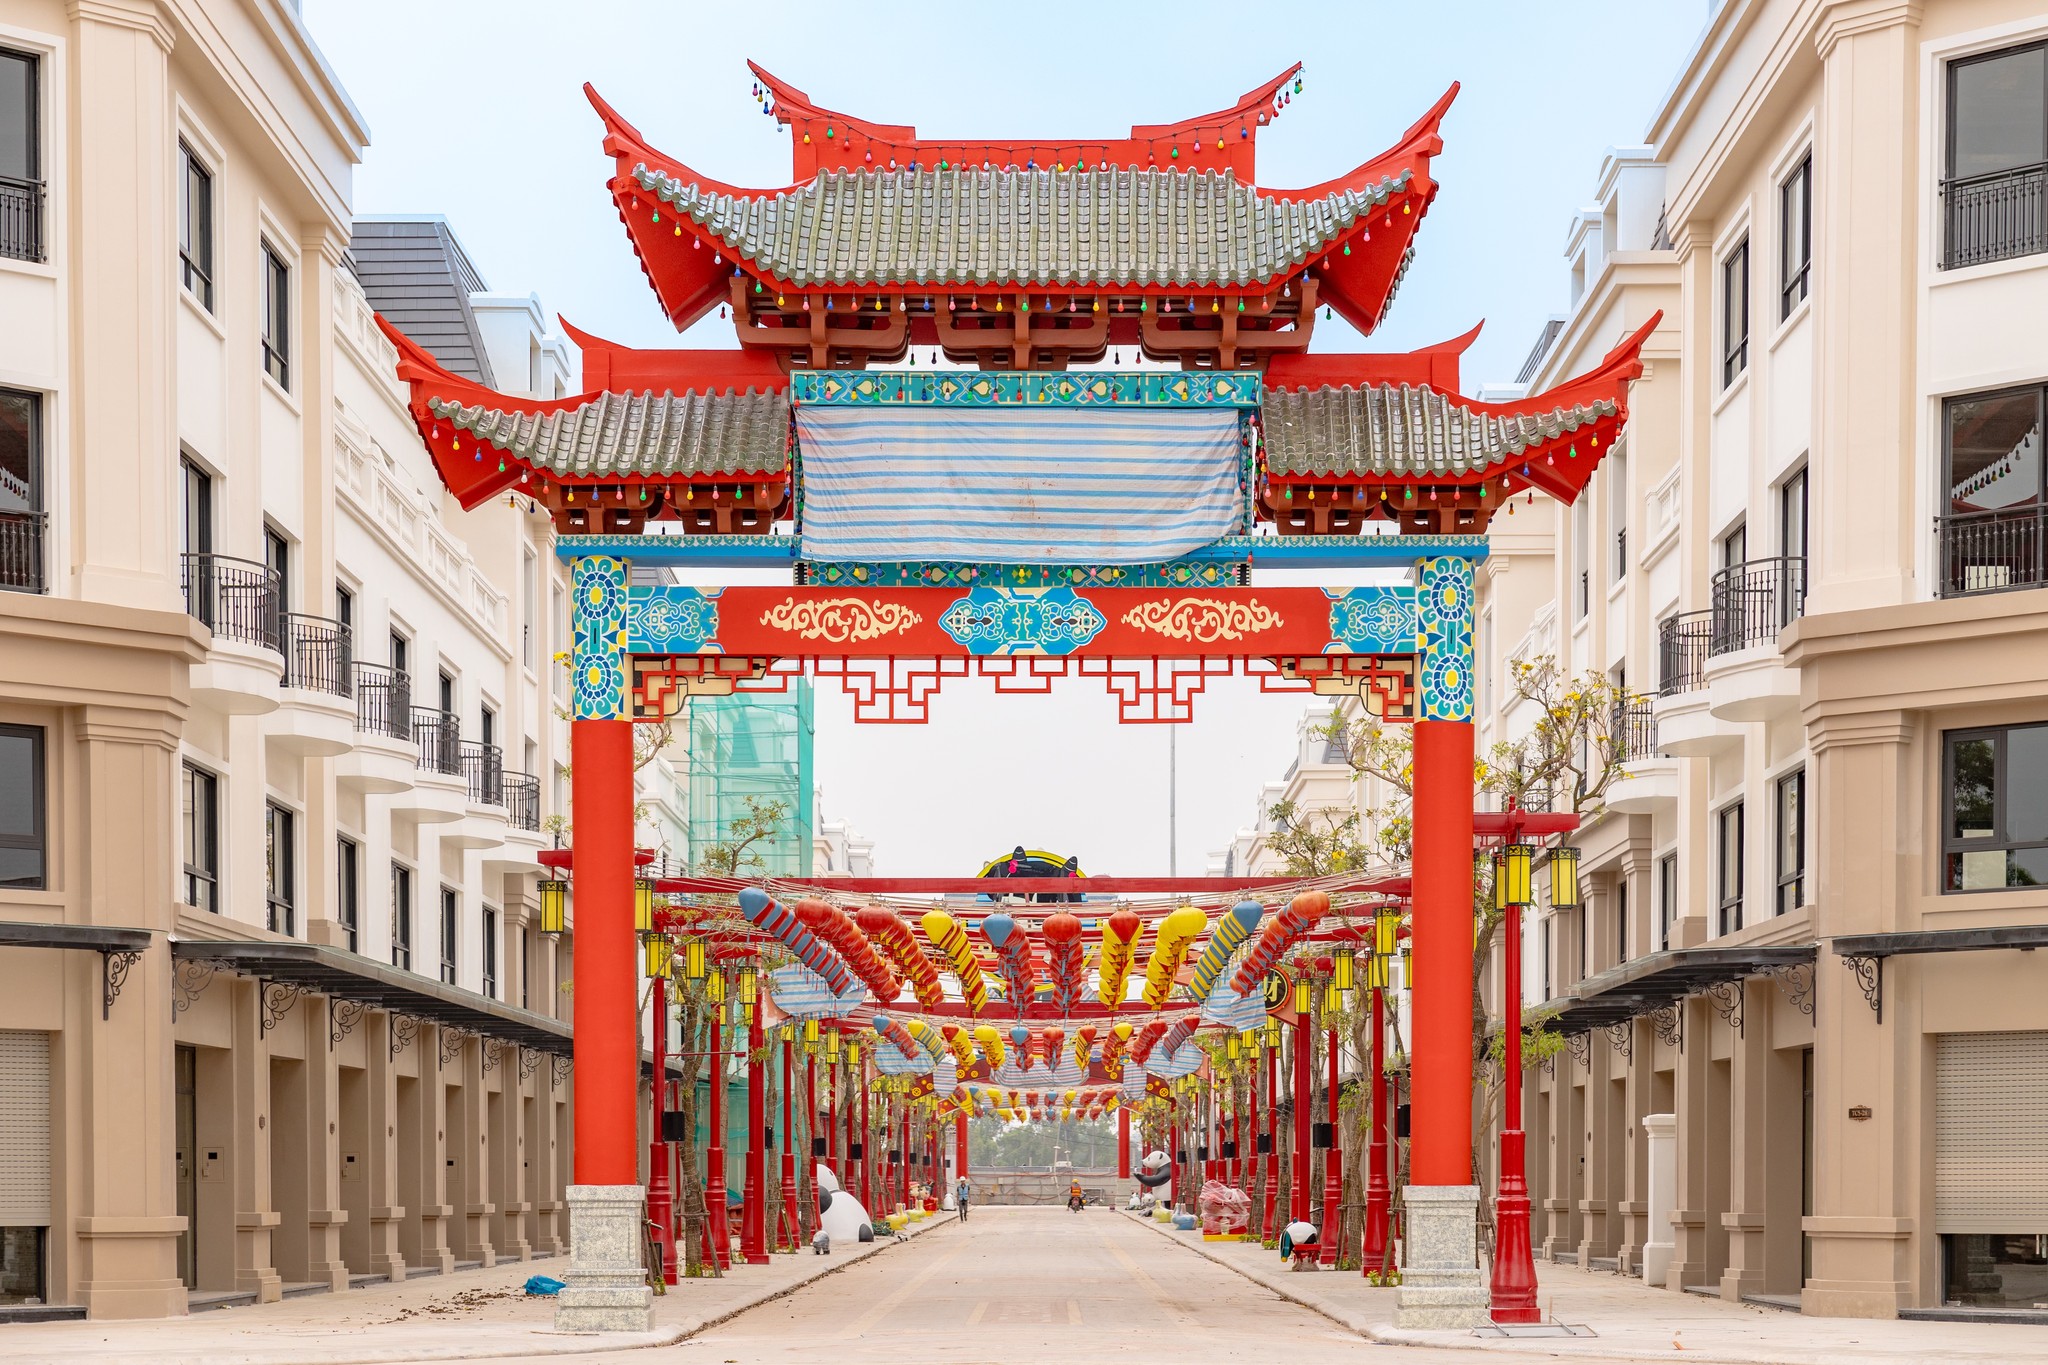 Sự kiện hội chợ diễn ra tại Little Shanghai sẽ là điểm nhấn của chương trình chào hè tại Vinhomes Golden Avenue. Ảnh: Ngọc Quỳnh